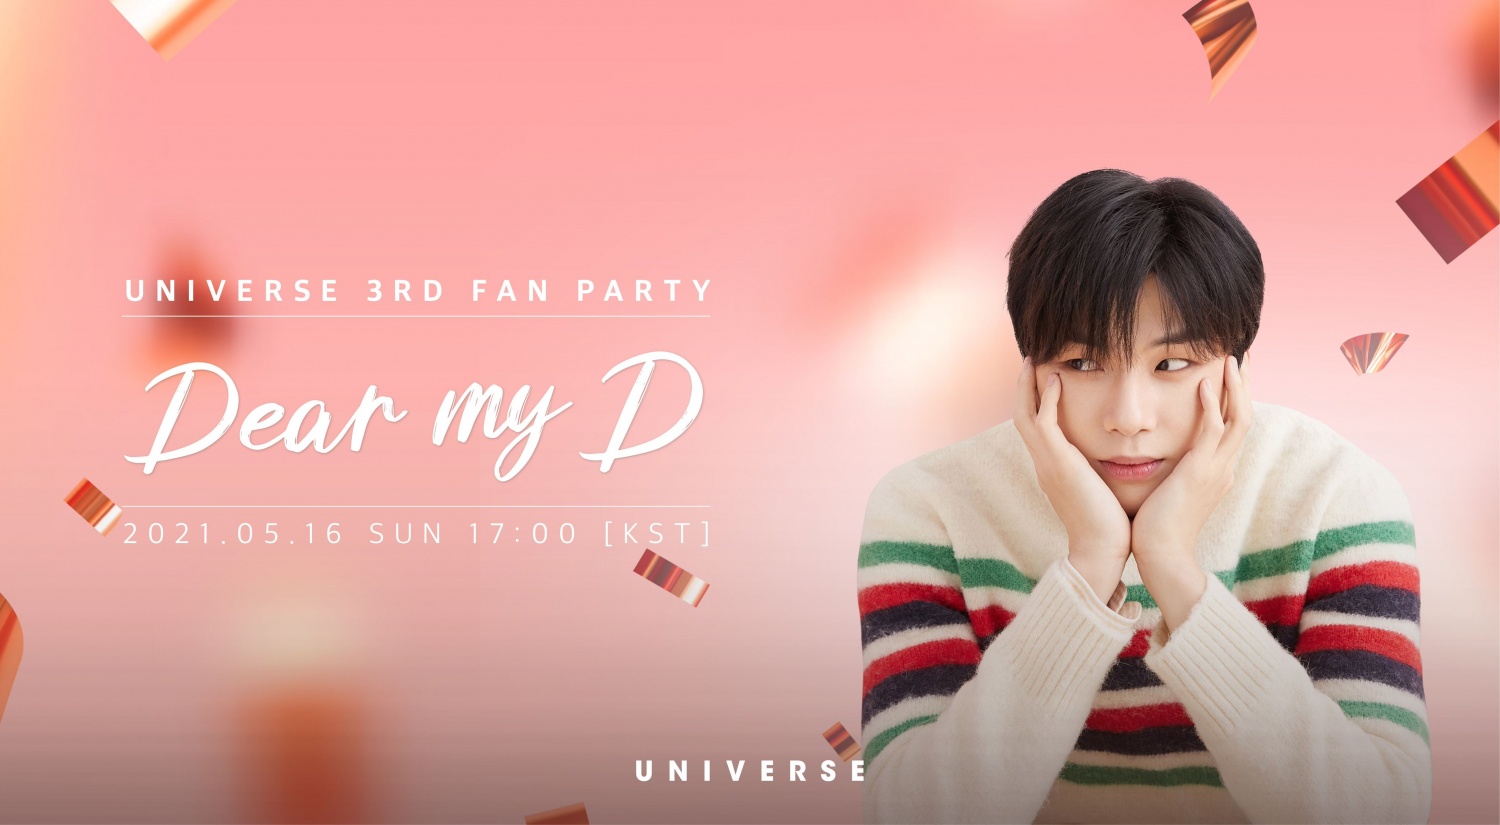 Daniel Kang hosts 'Dear My D'fan party